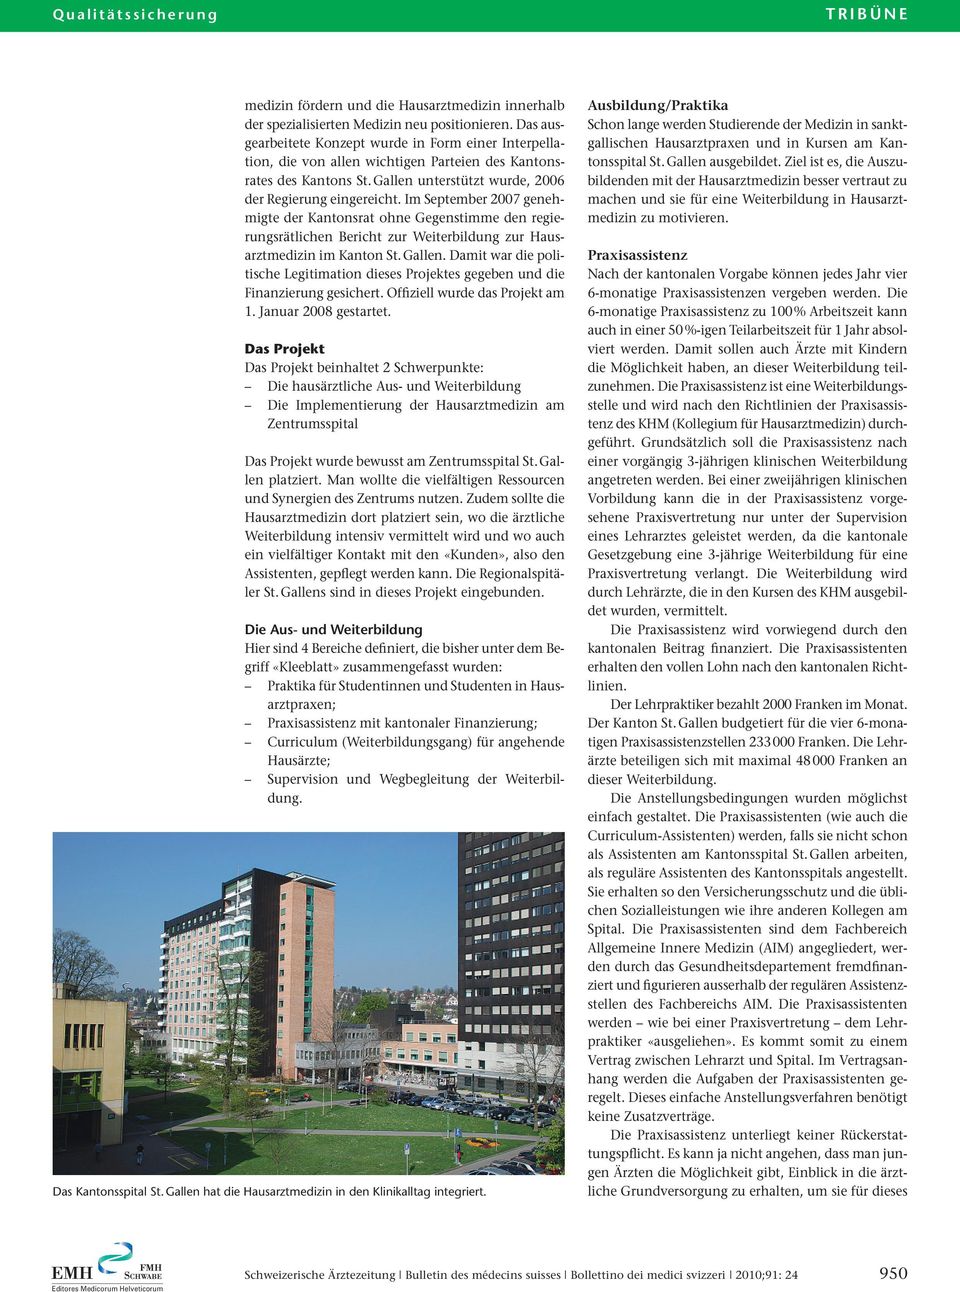 Im September 2007 genehmigte der Kantonsrat ohne Gegenstimme den regierungsrätlichen Bericht zur Weiterbildung zur Hausarztmedizin im Kanton St.Gallen.